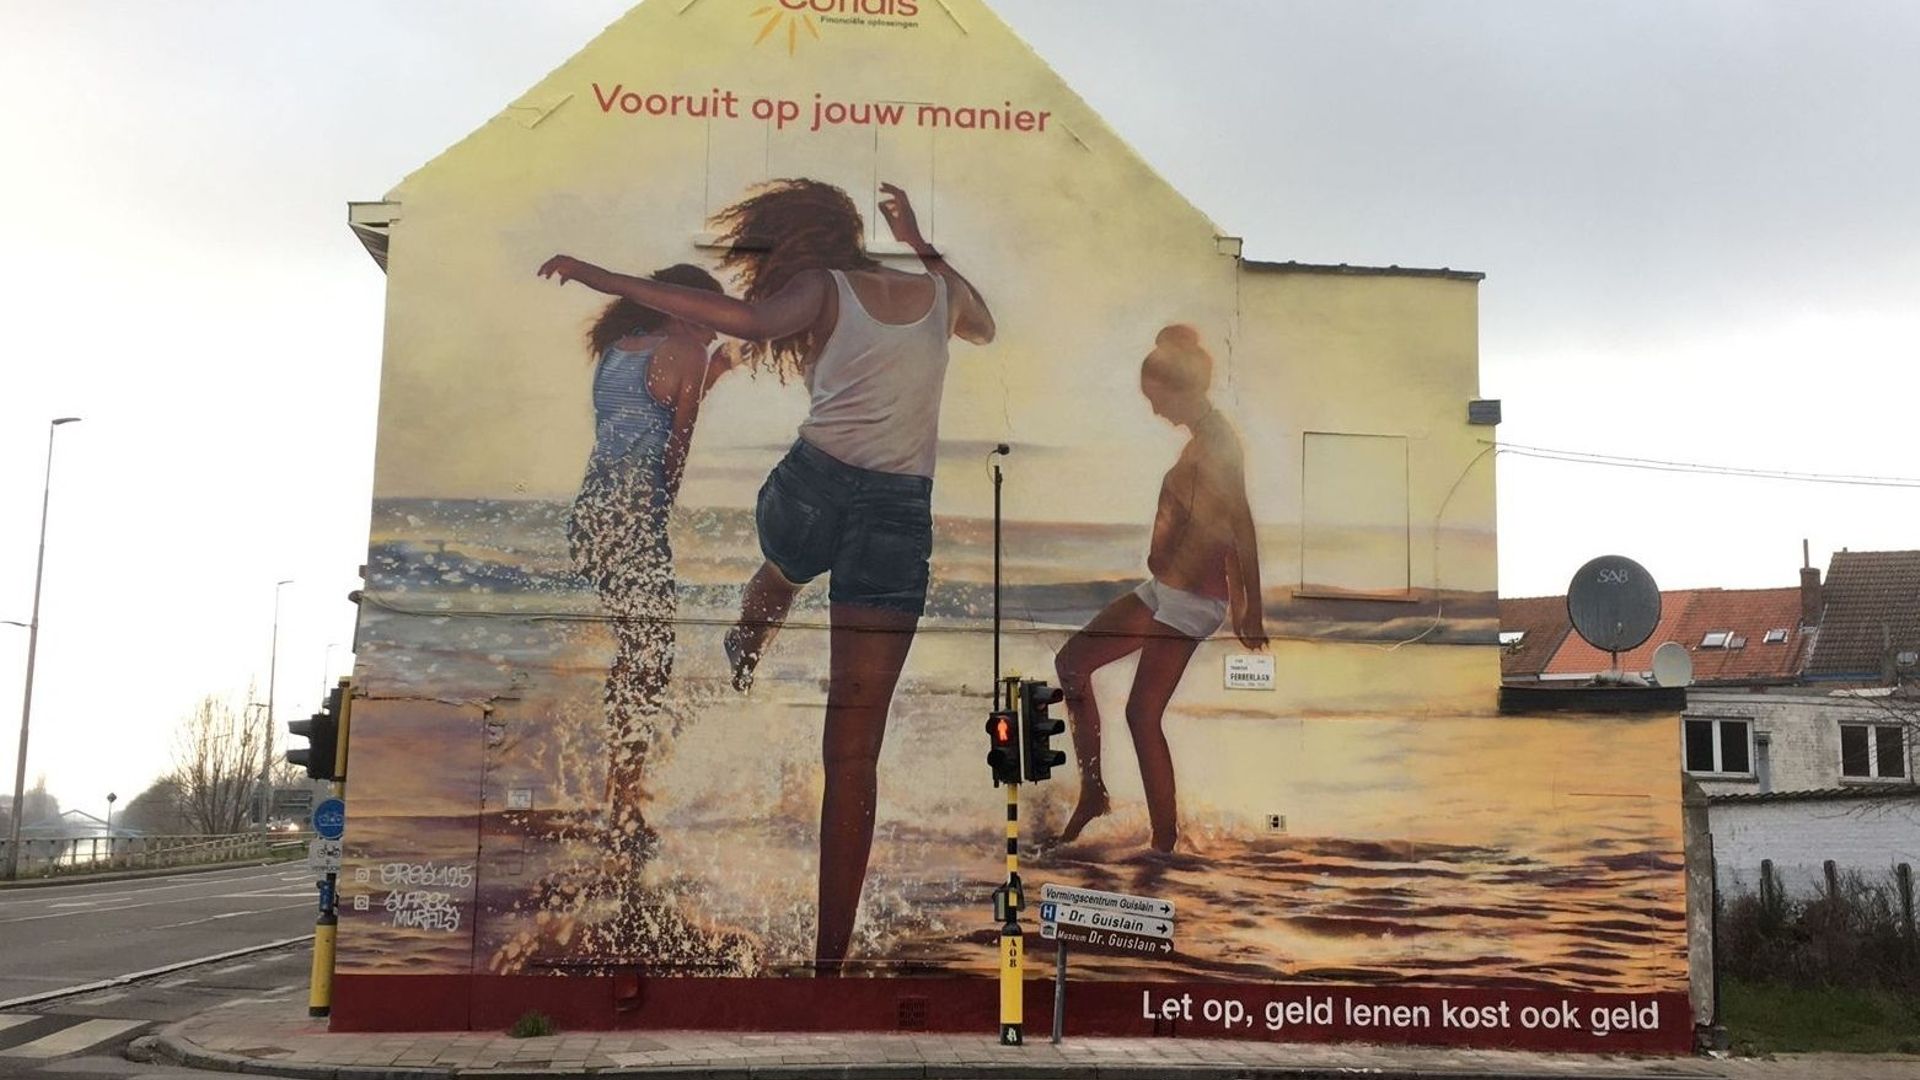 A Gand, autre exemple de campagne publicitaire sur un pignon peint